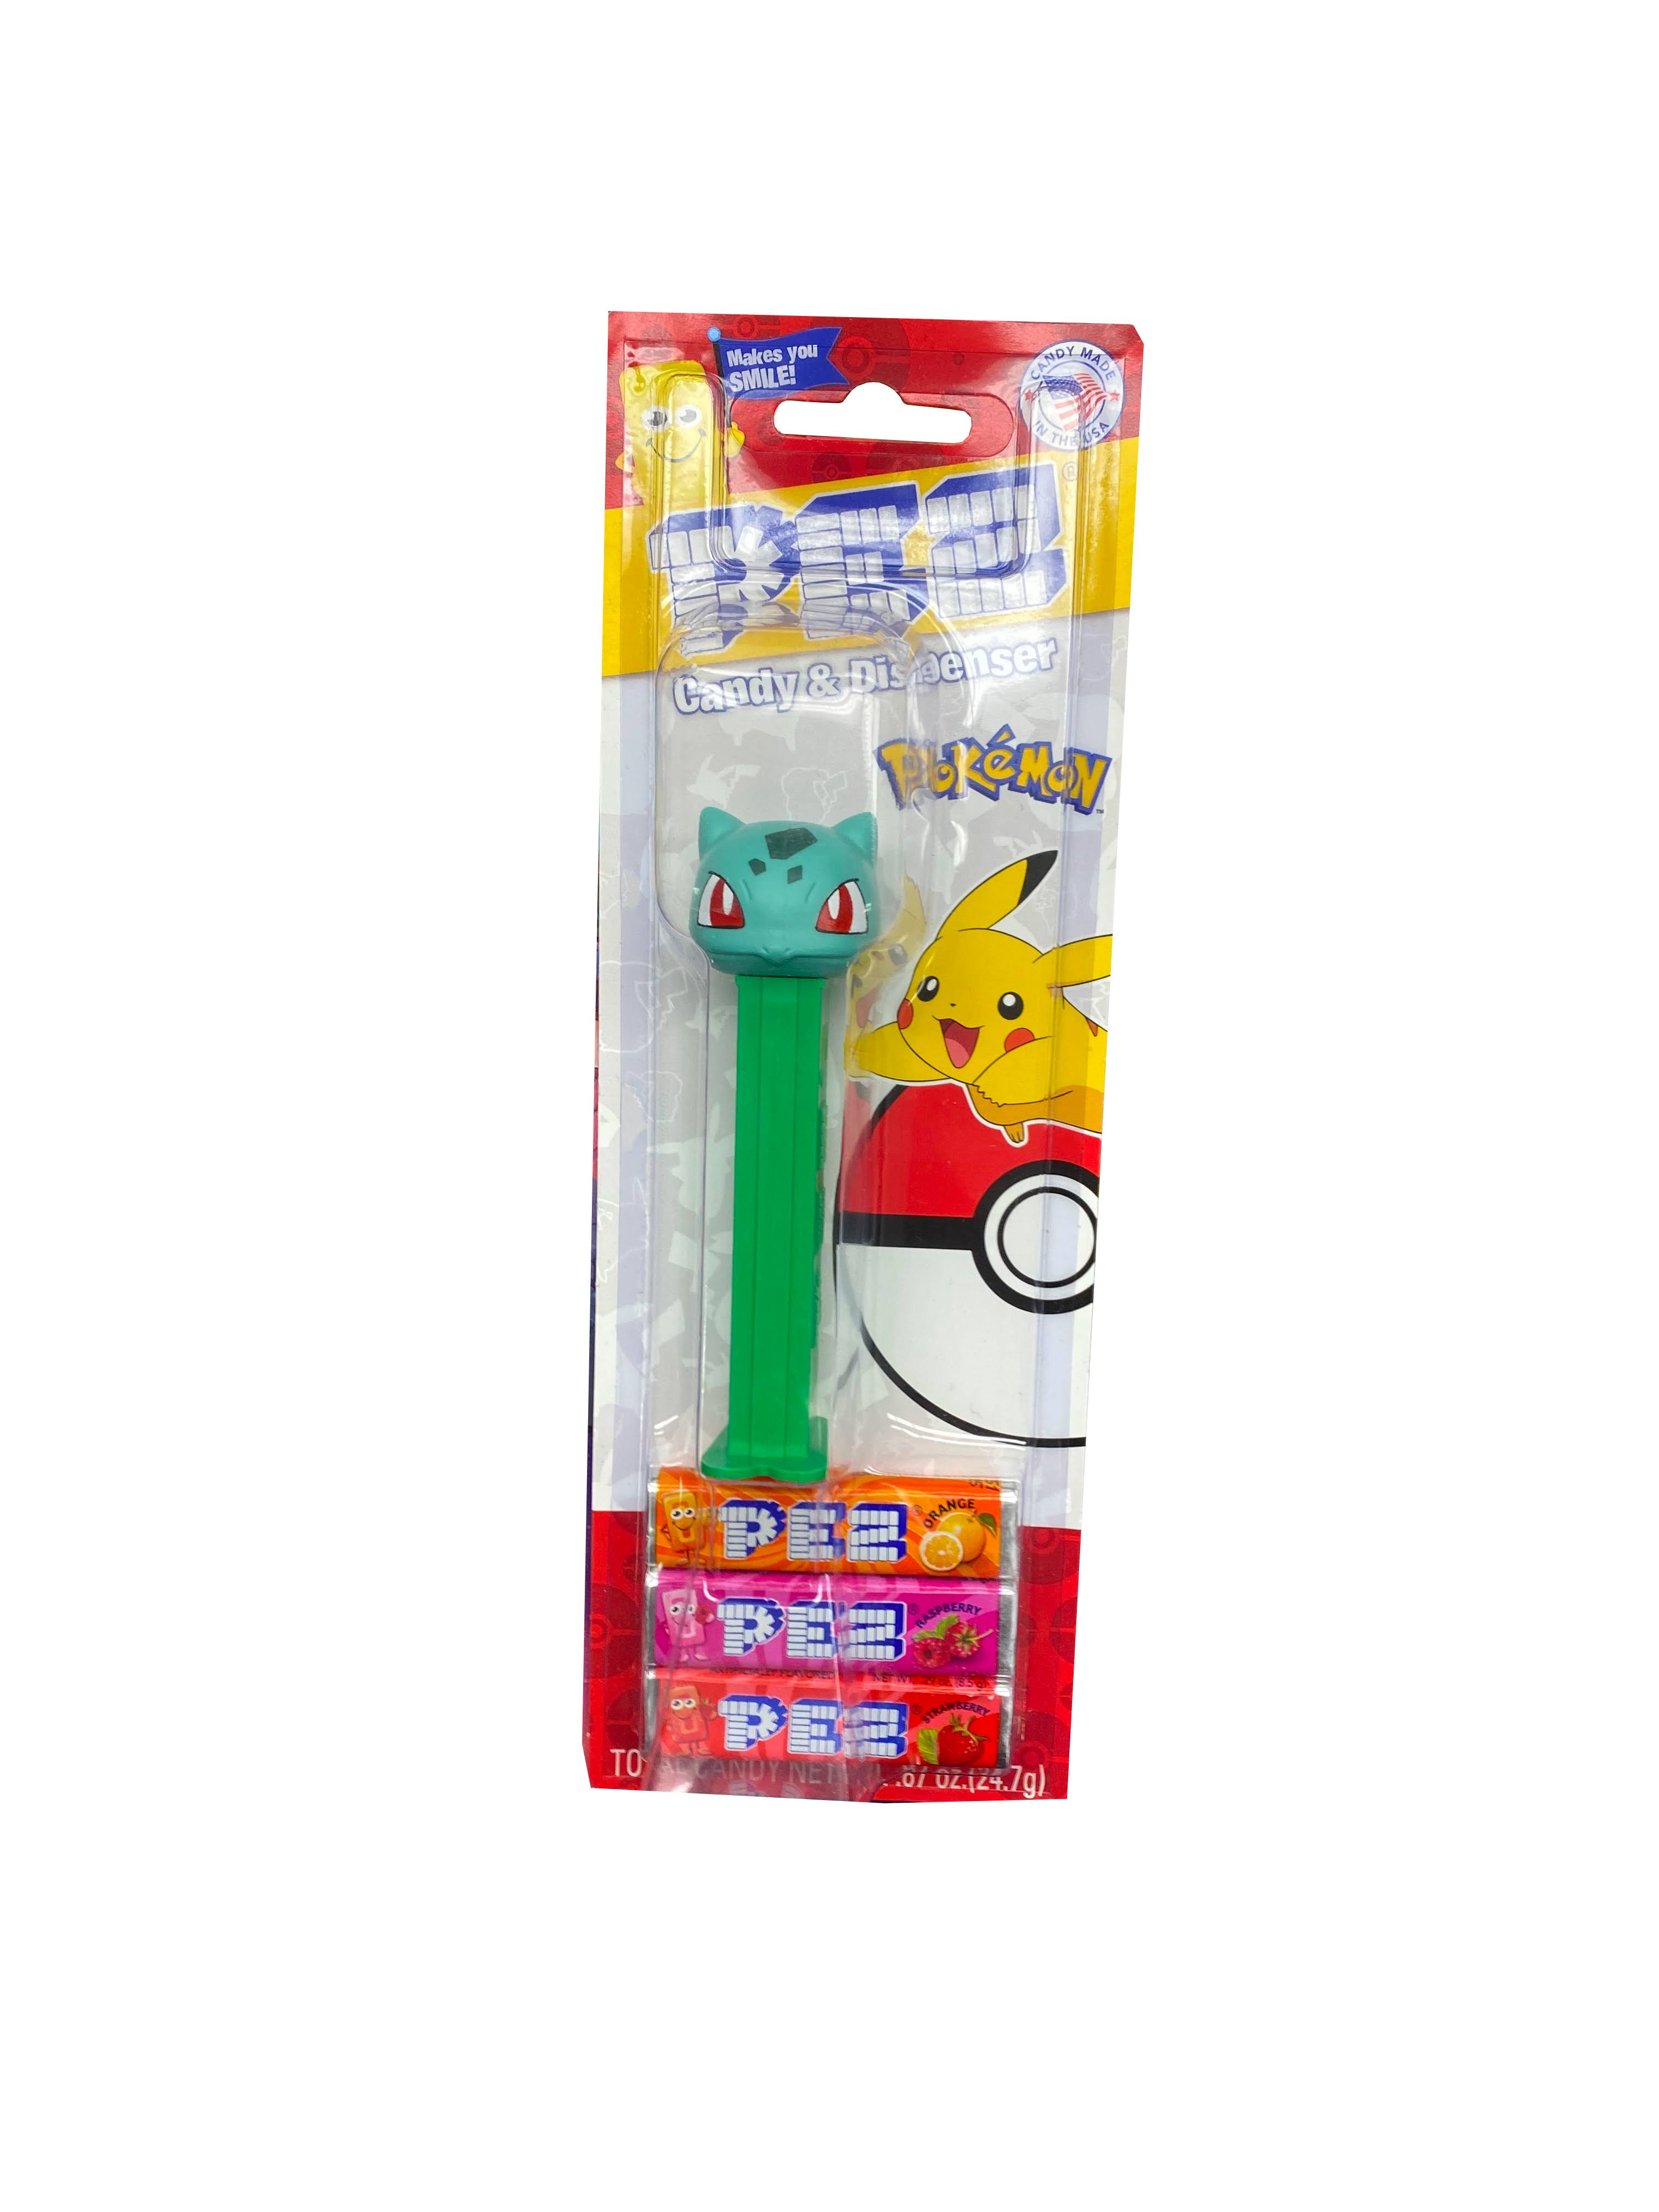 Pez Pokemon Dispenser & Candy